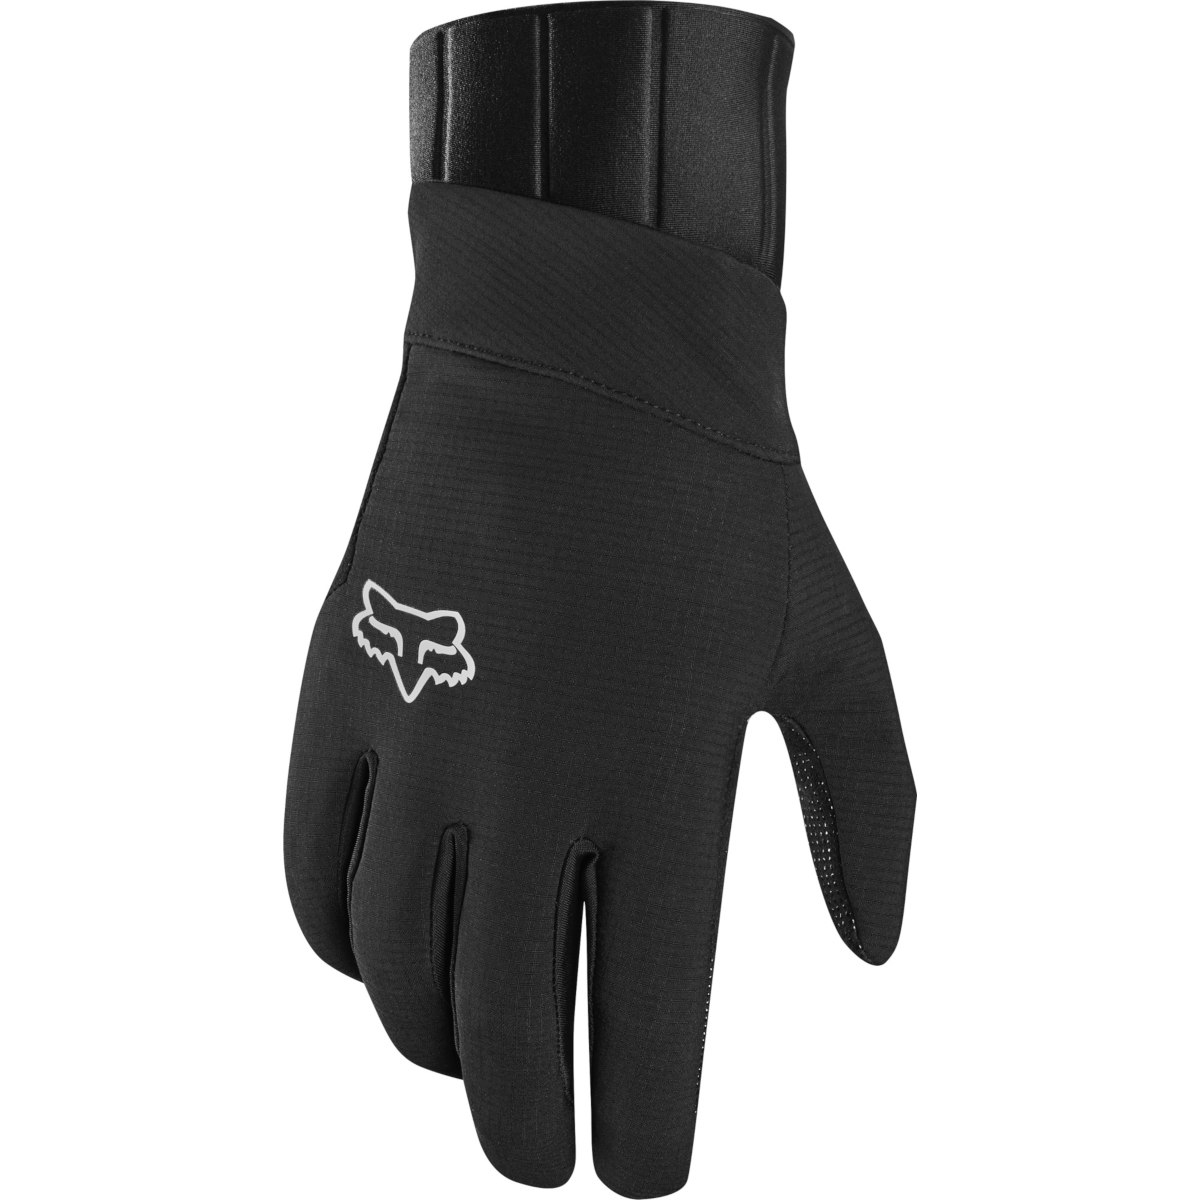 Produktbild von FOX Defend Pro Fire MTB Vollfinger-Handschuh - schwarz